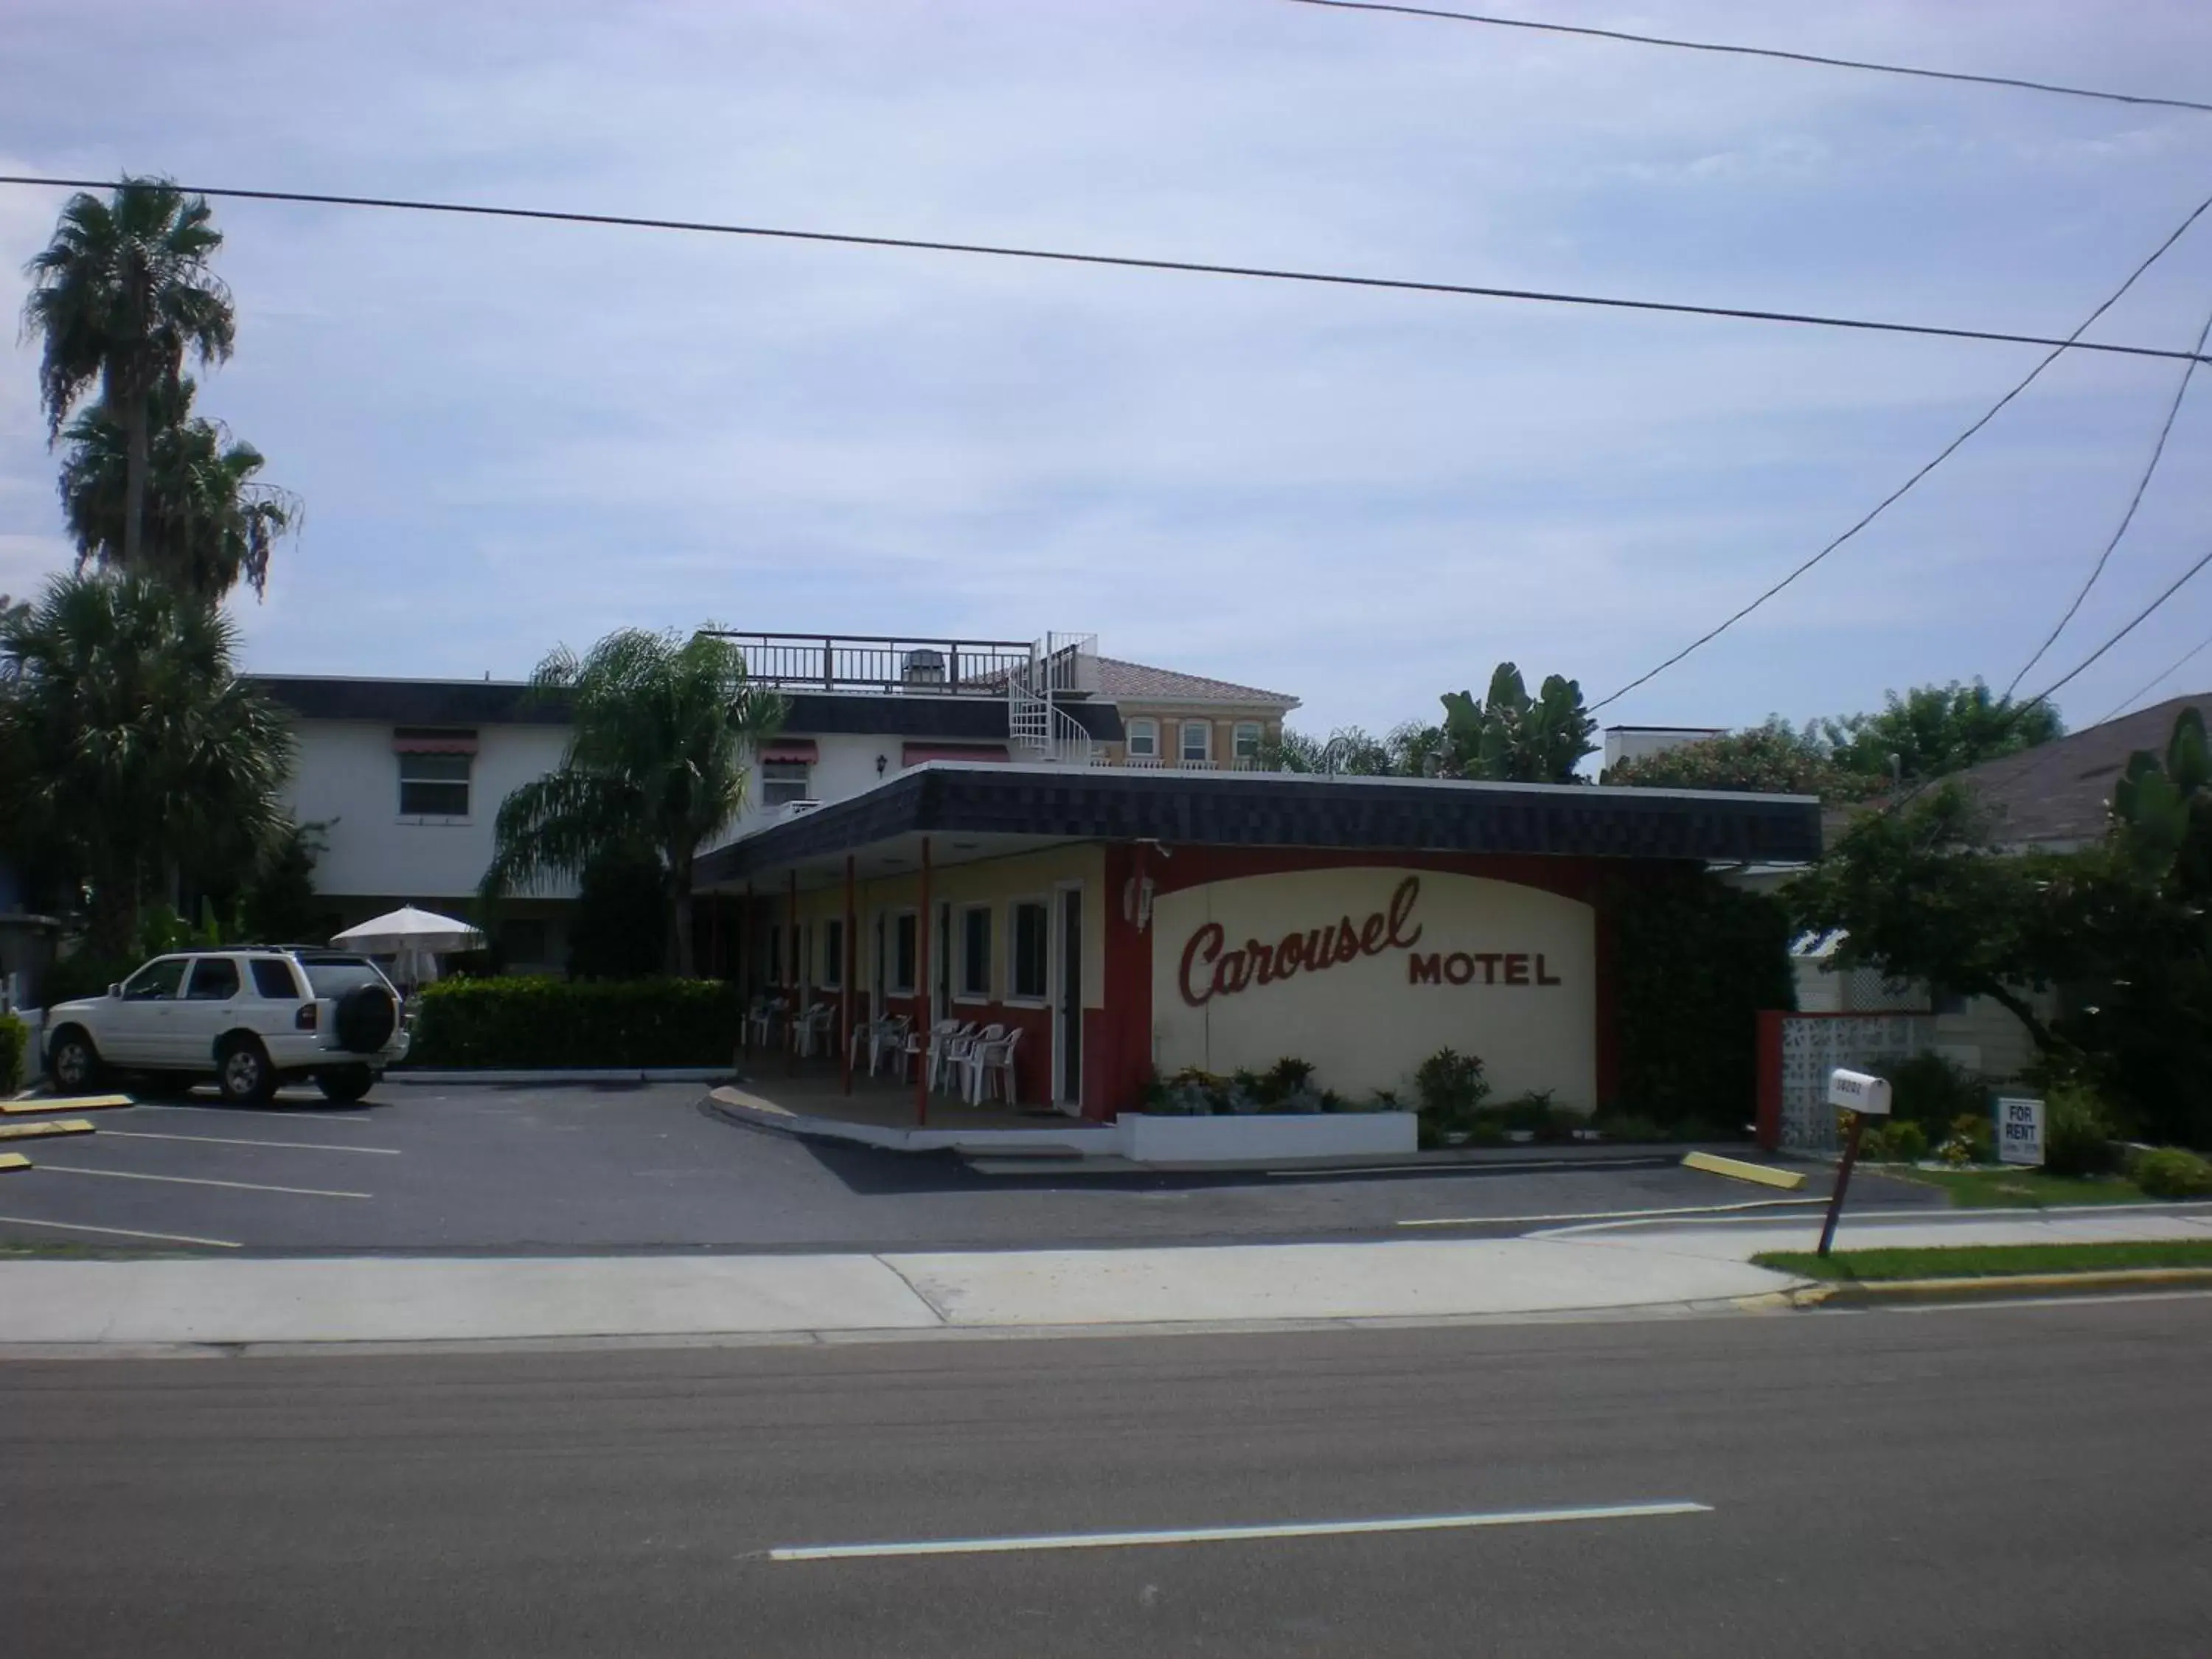 Facade/entrance, Property Building in Carousel Motel -Redington Shores